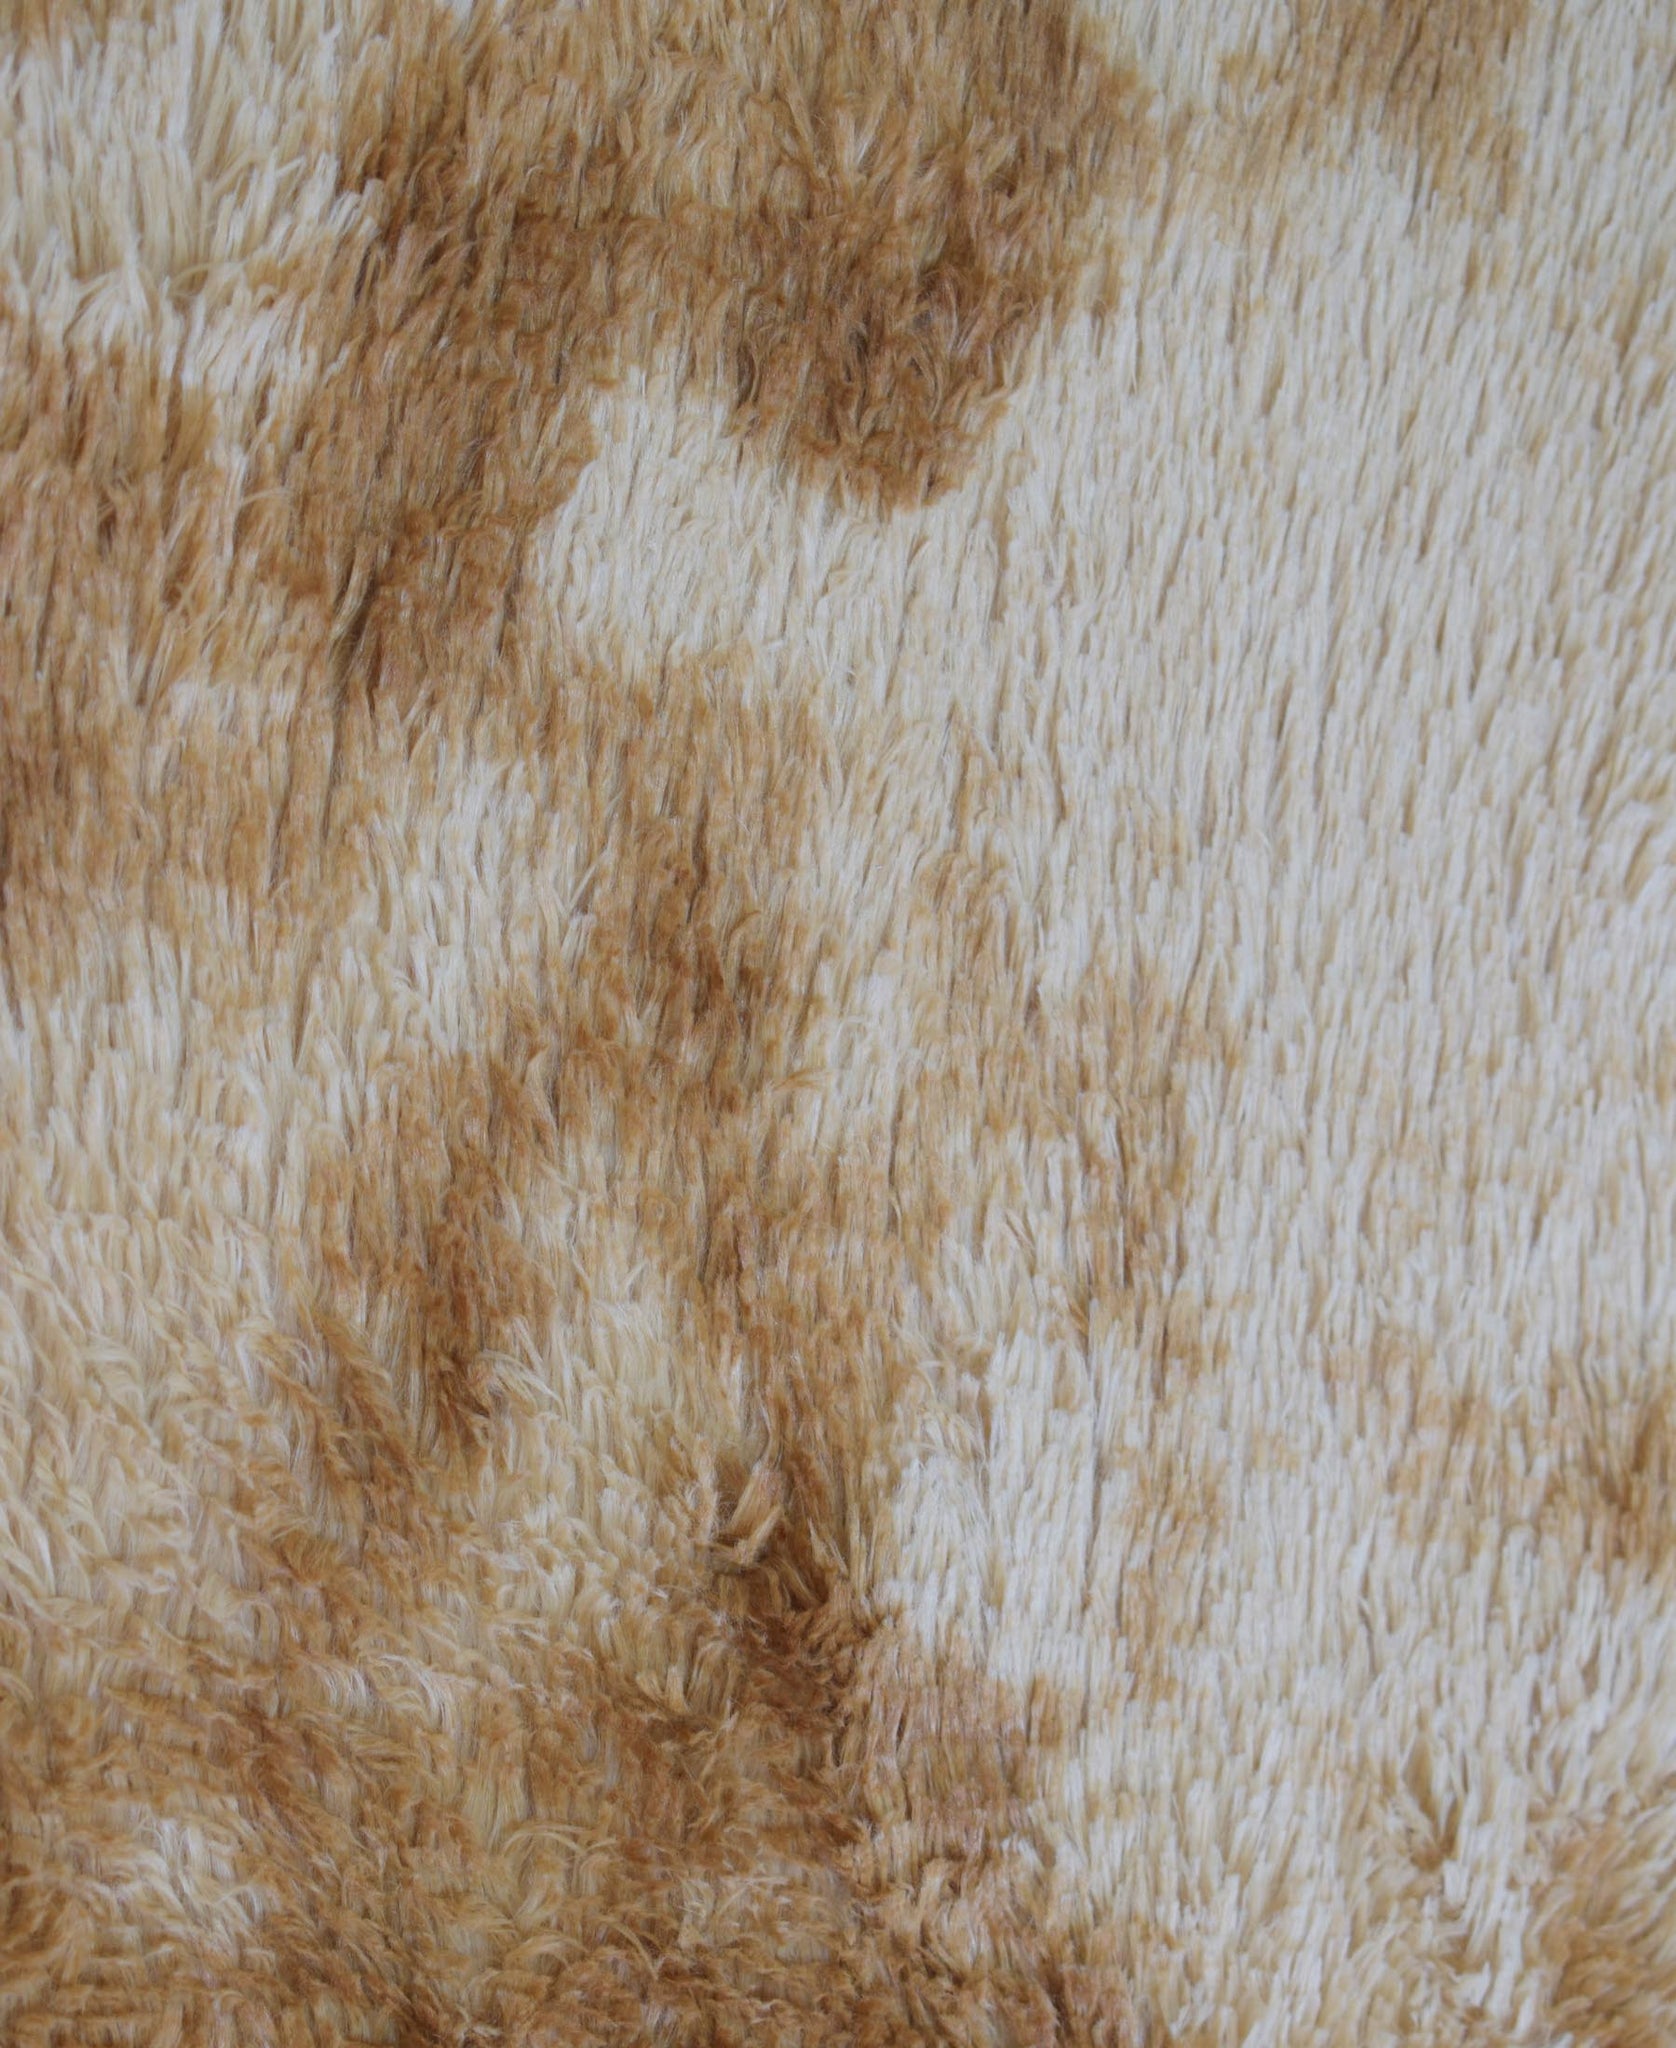 Shaggy Carpet 1500mm x 2000mm - Light Brown